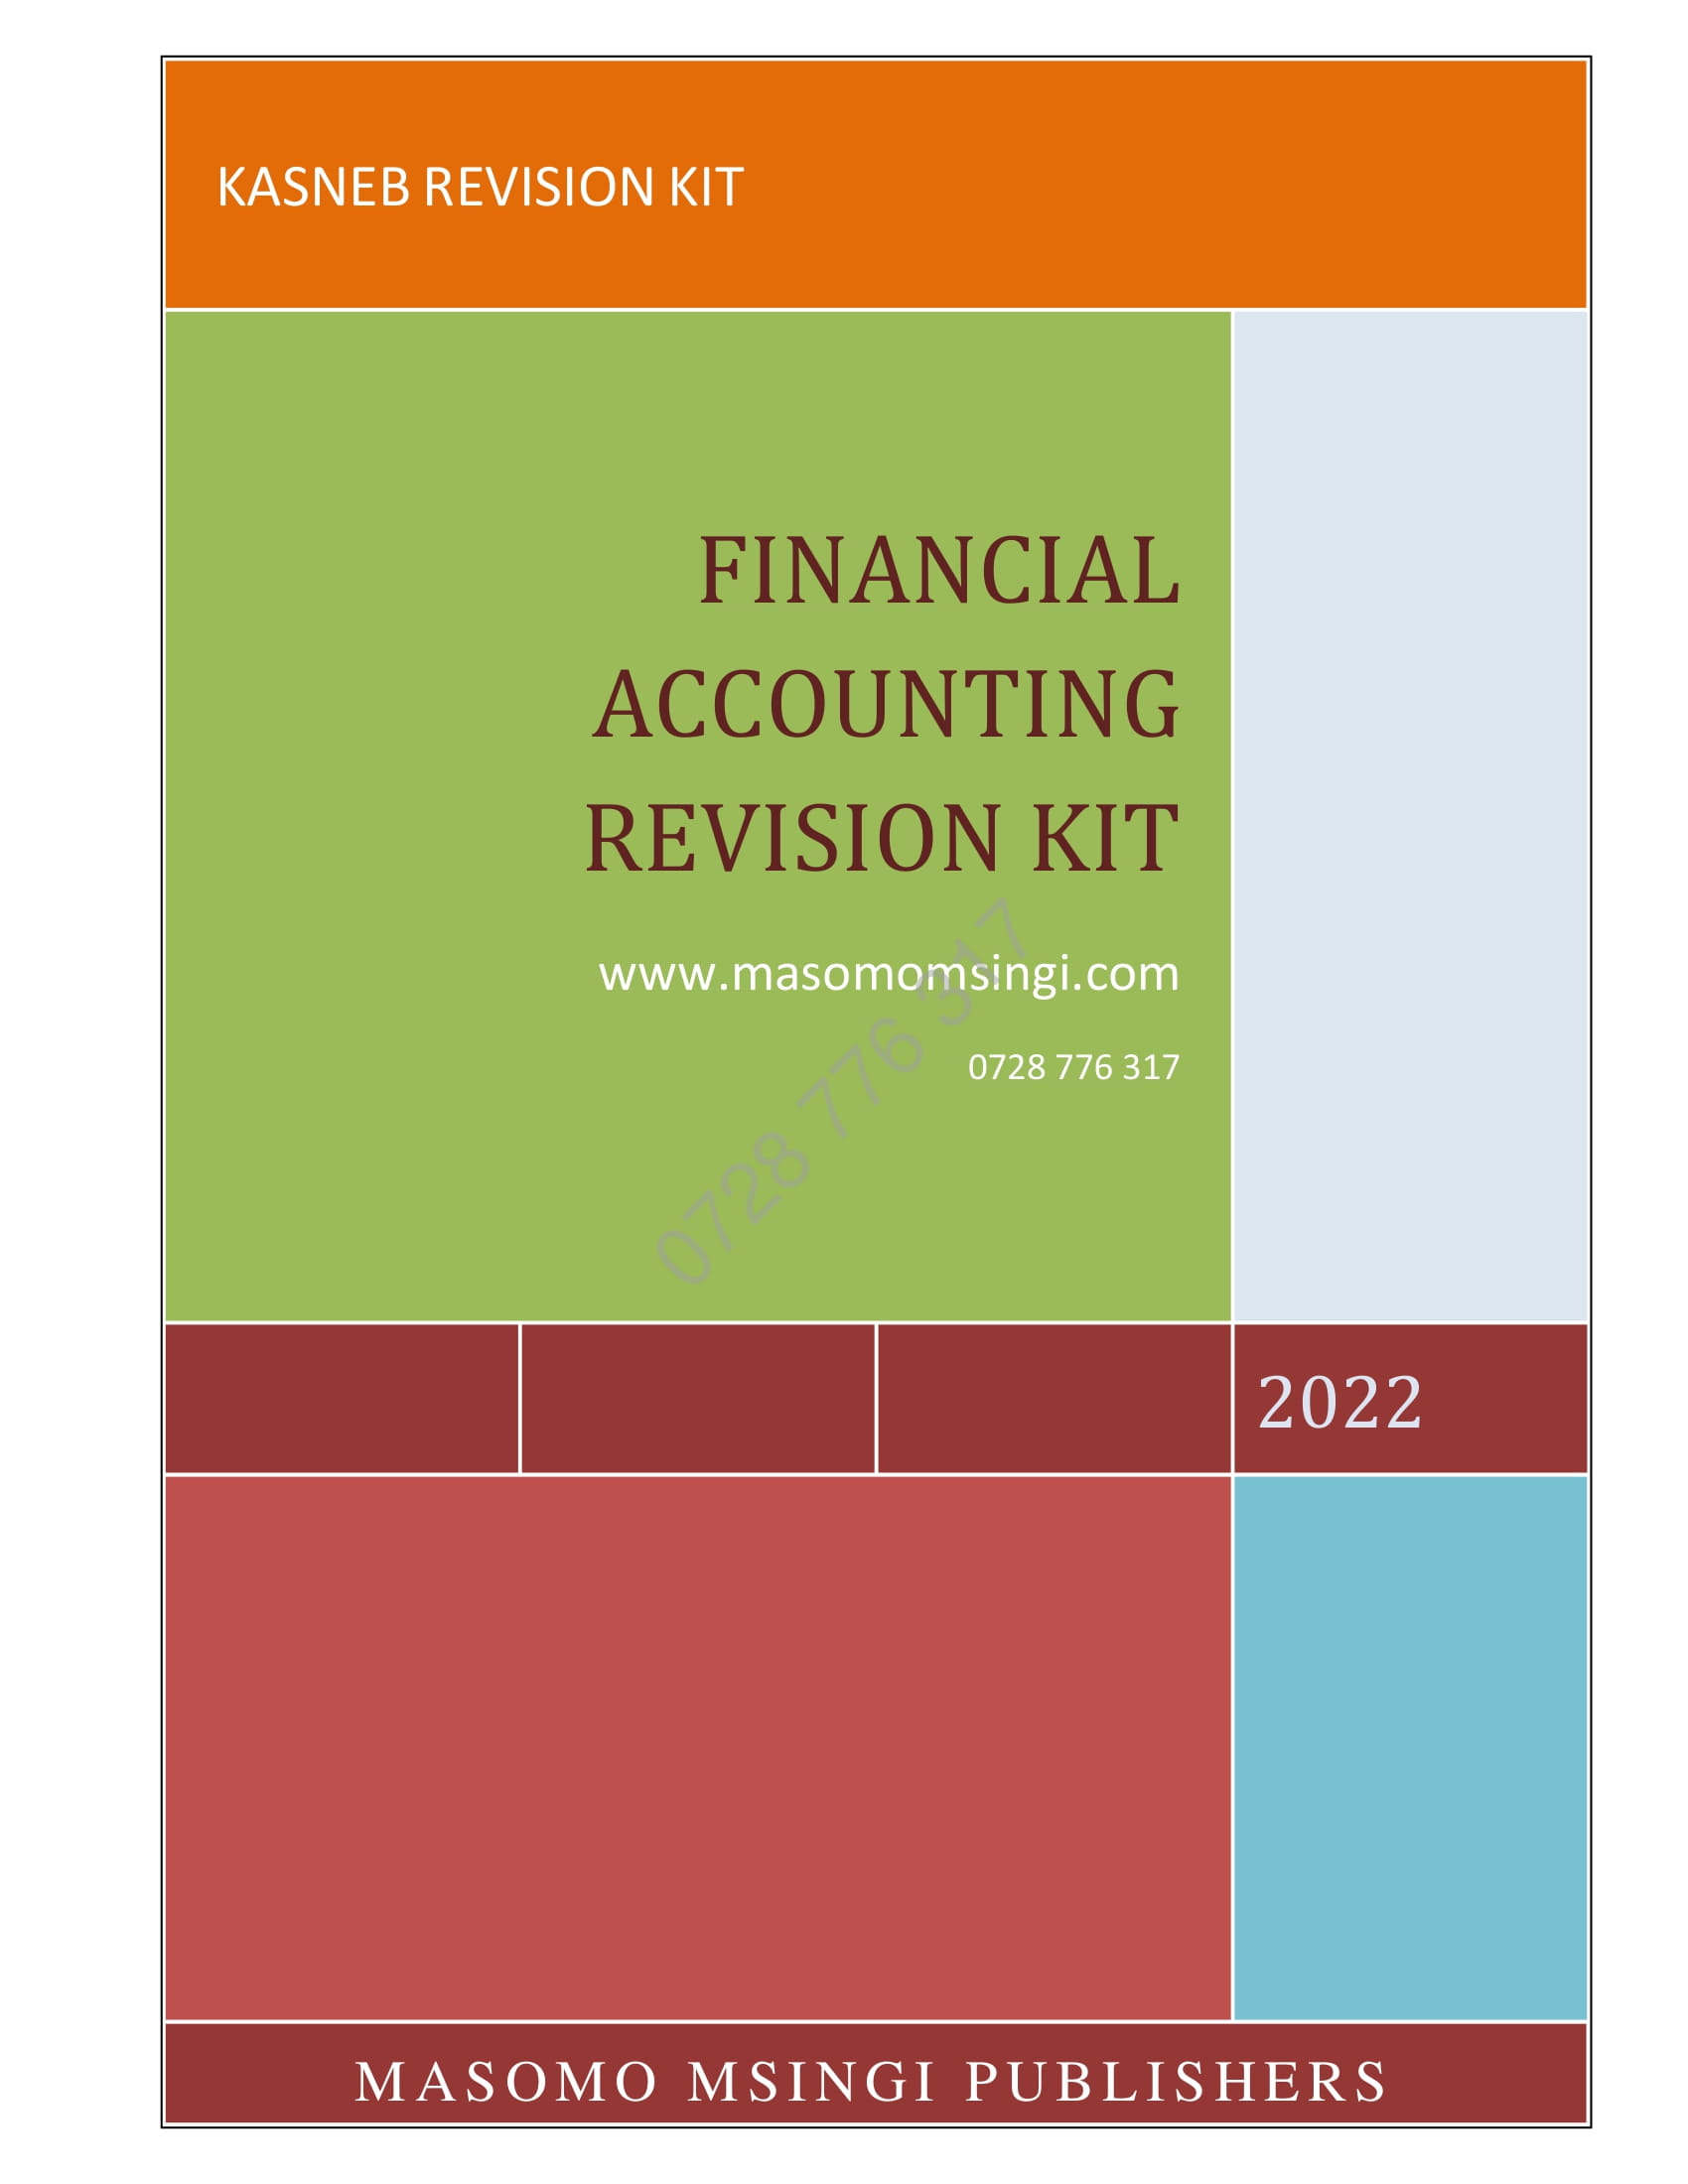 Financial Accounting Revision Kit